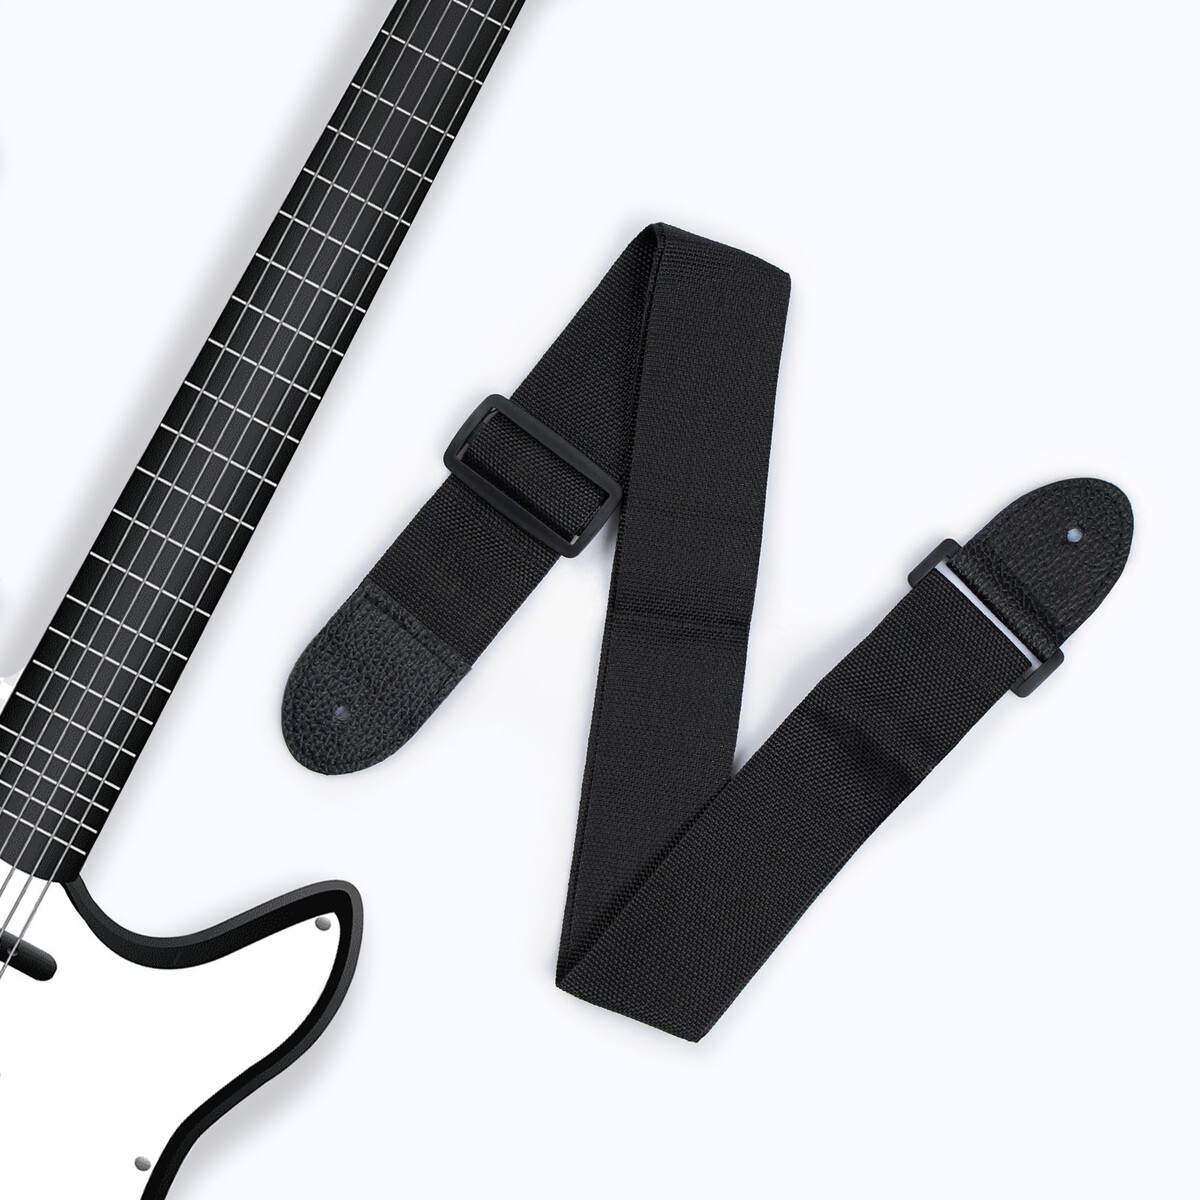 Ремень для гитары, черный, длина 60-110 см, ширина 5 см ремень для гитары длина 60 110 см ширина 5 см